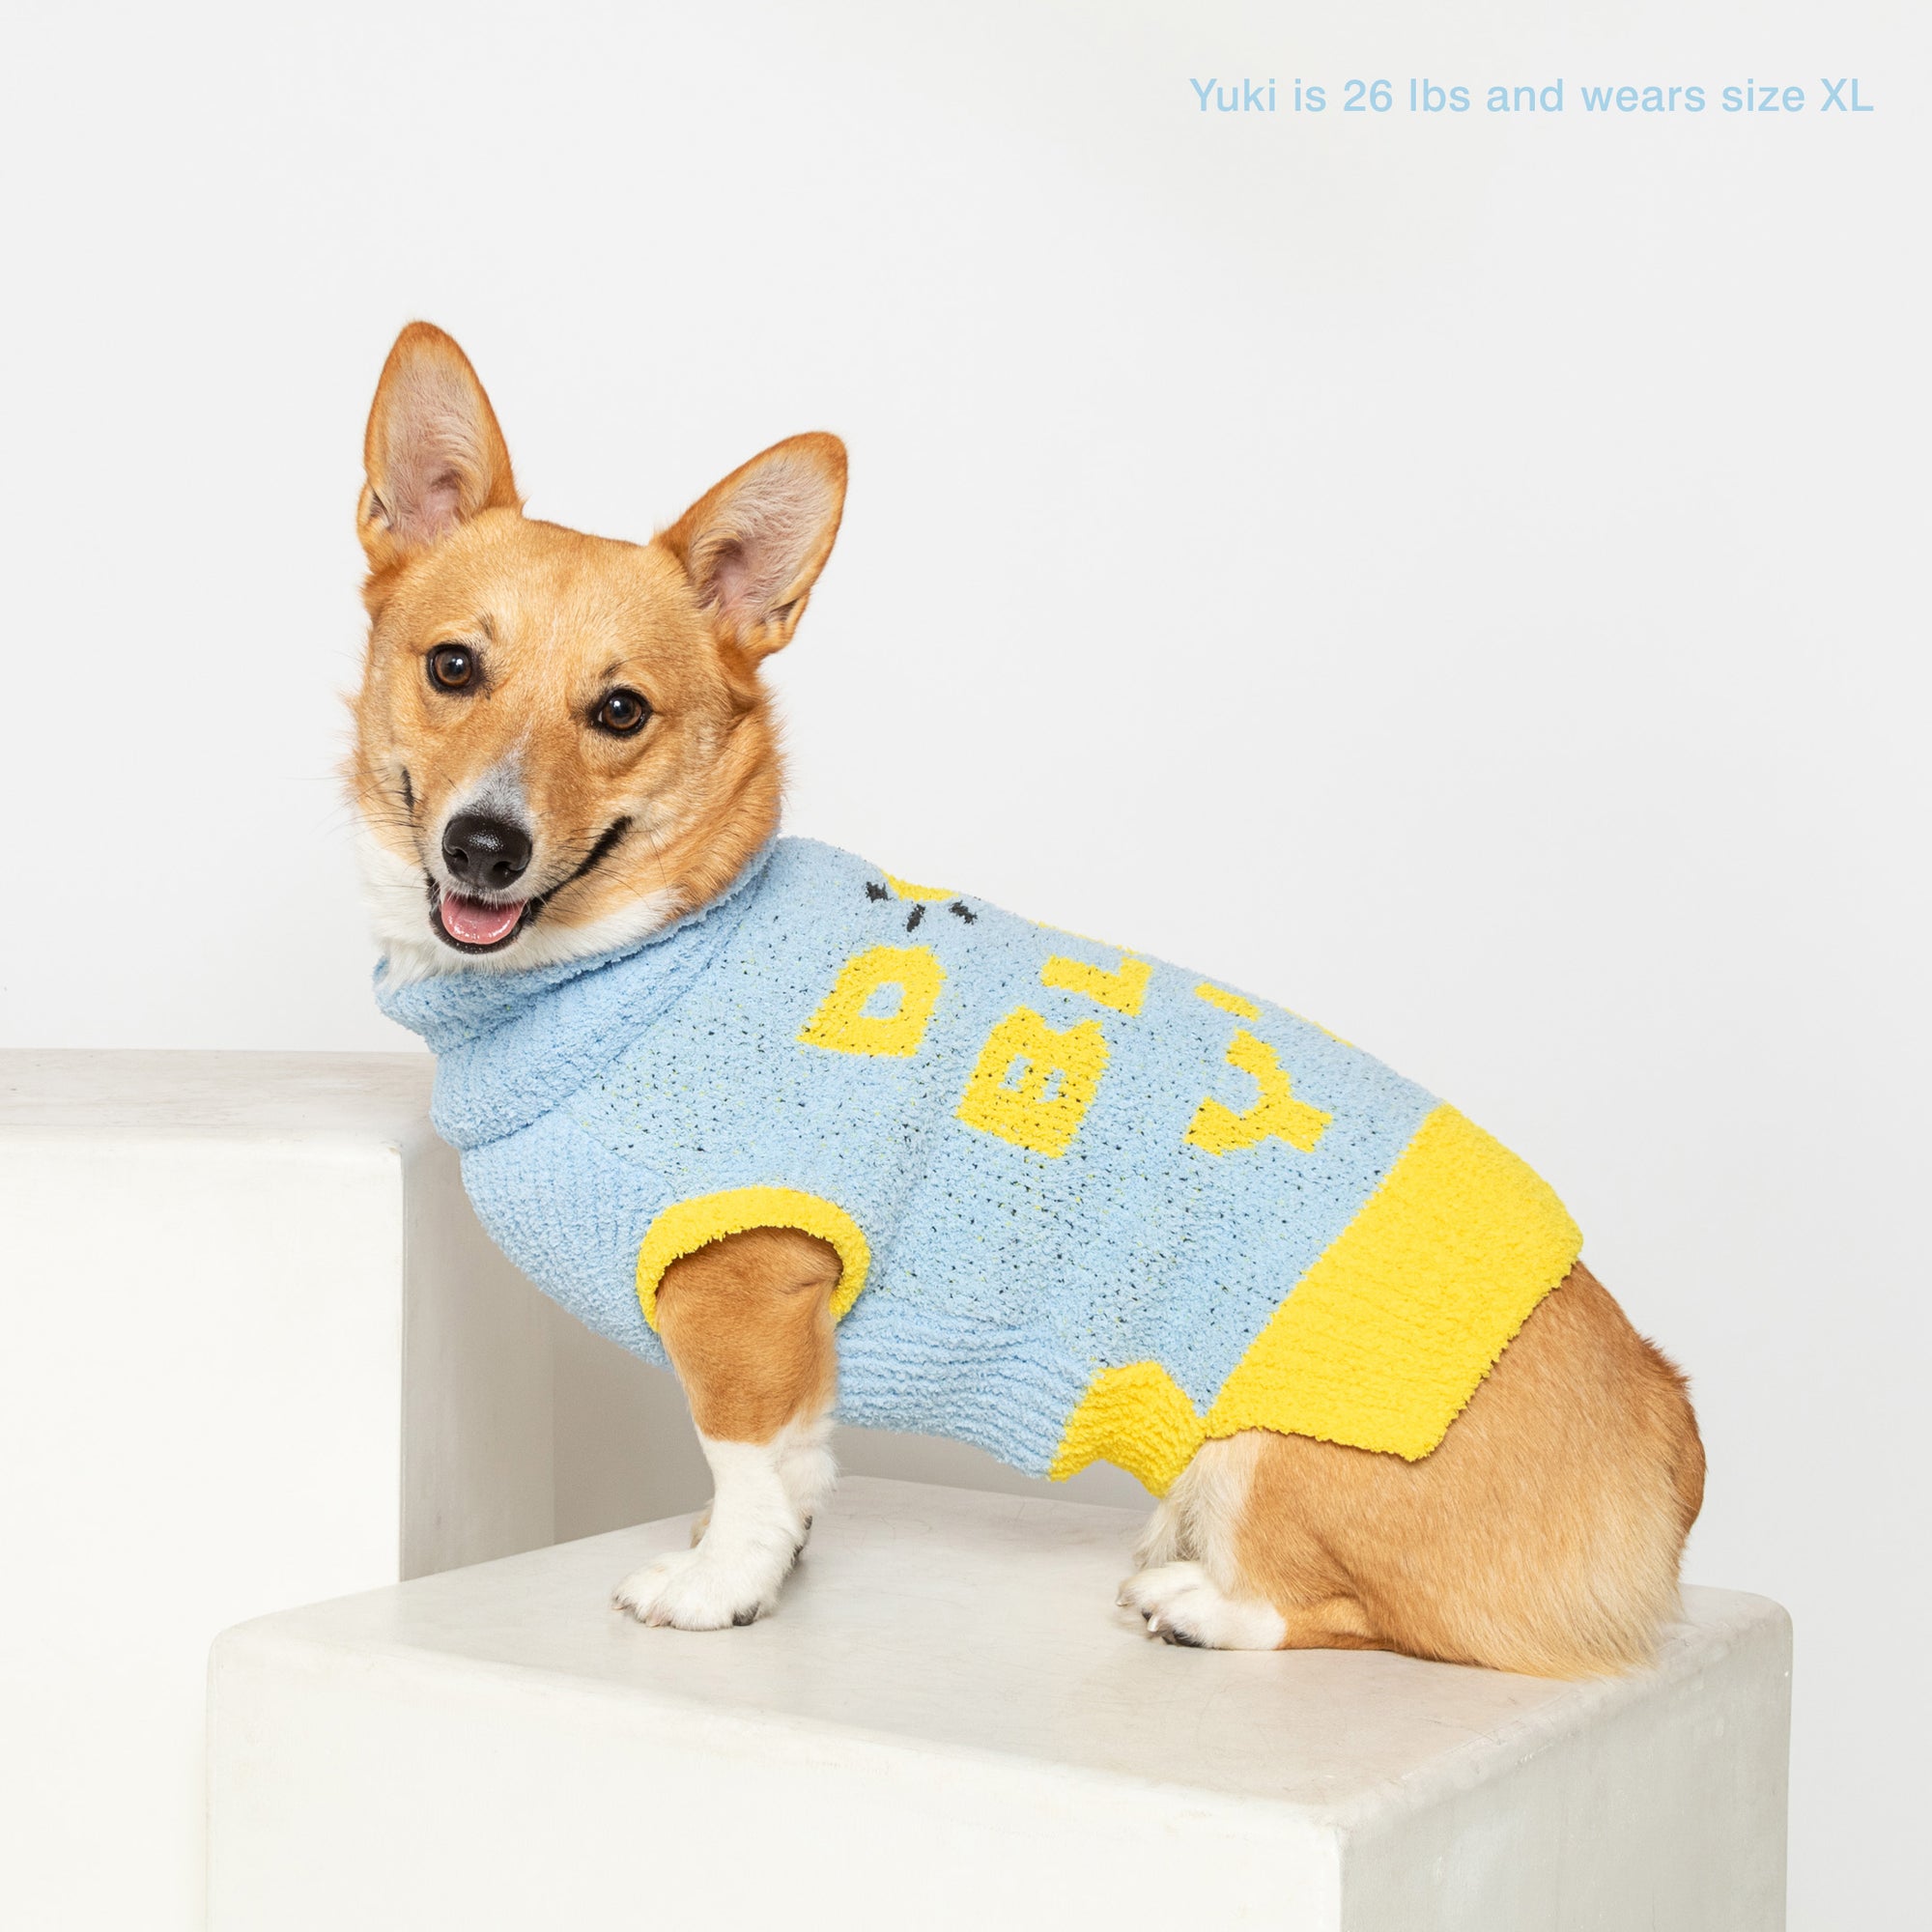 Corgi named Yuki, 26 lbs, in a light blue "The Furryfolks" sweater size XL, smiles on a pedestal, white backdrop.